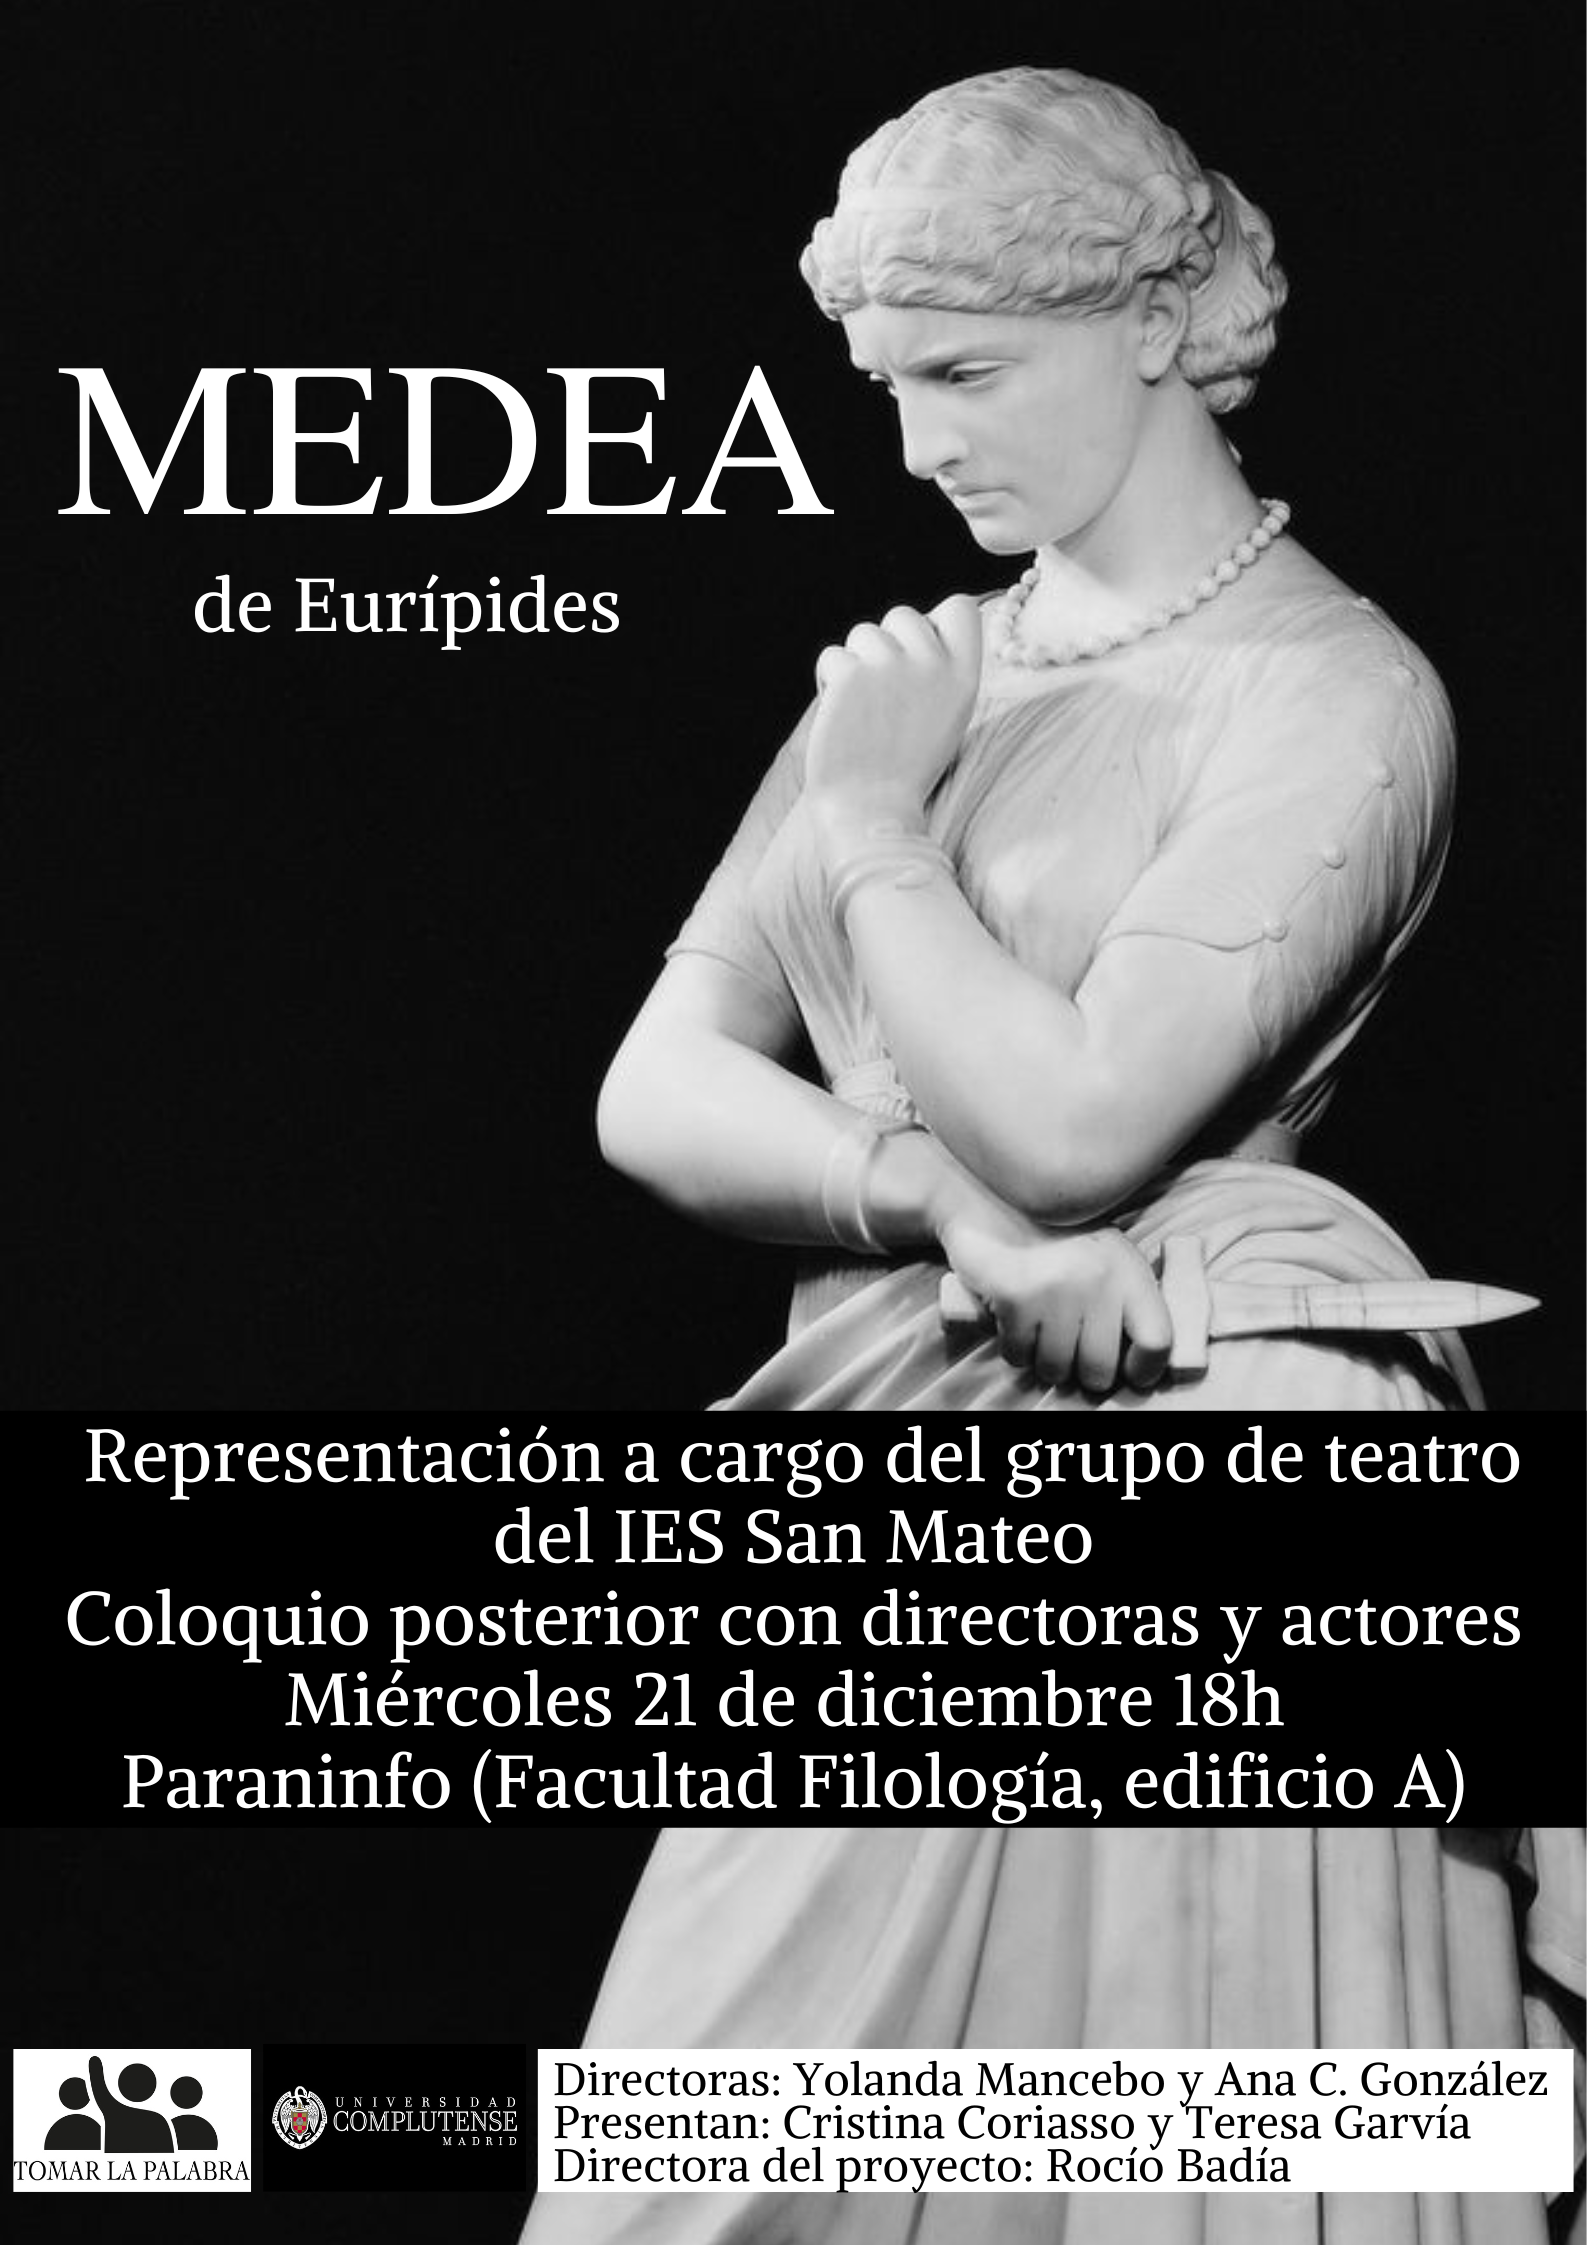 Representación teatral de Medea, adaptación de la tragedia de Eurípides